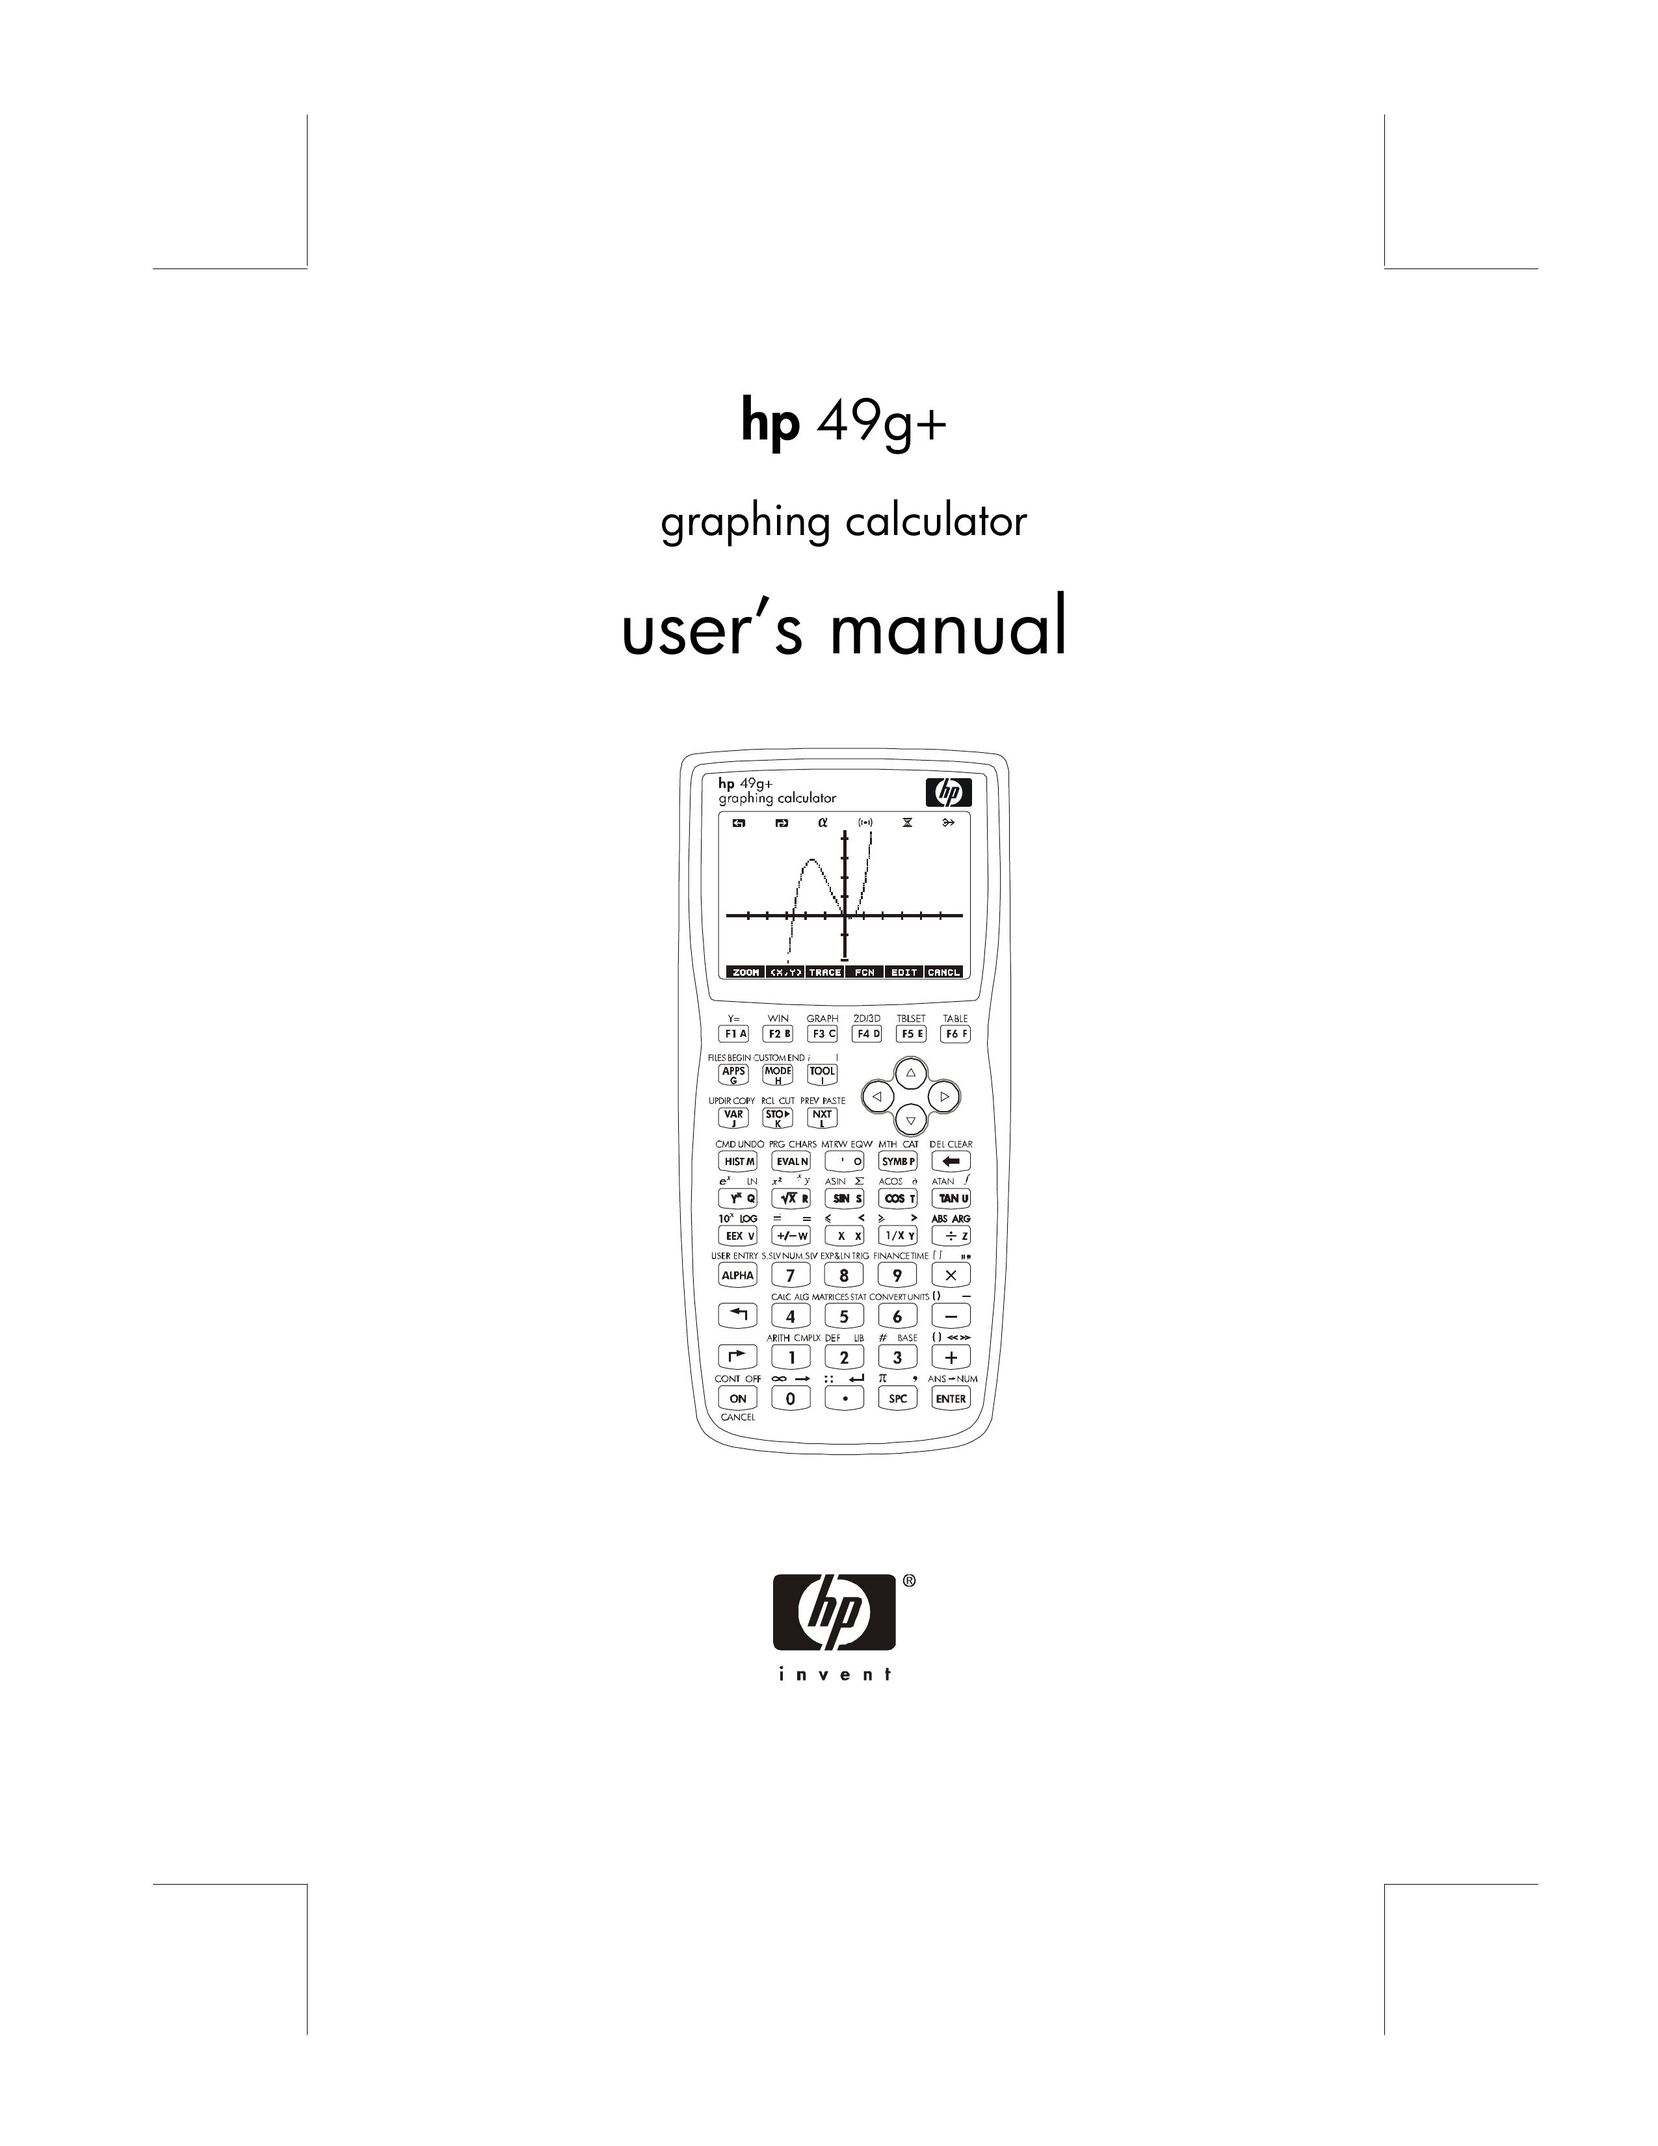 HP (Hewlett-Packard) hp 49g+ Calculator User Manual